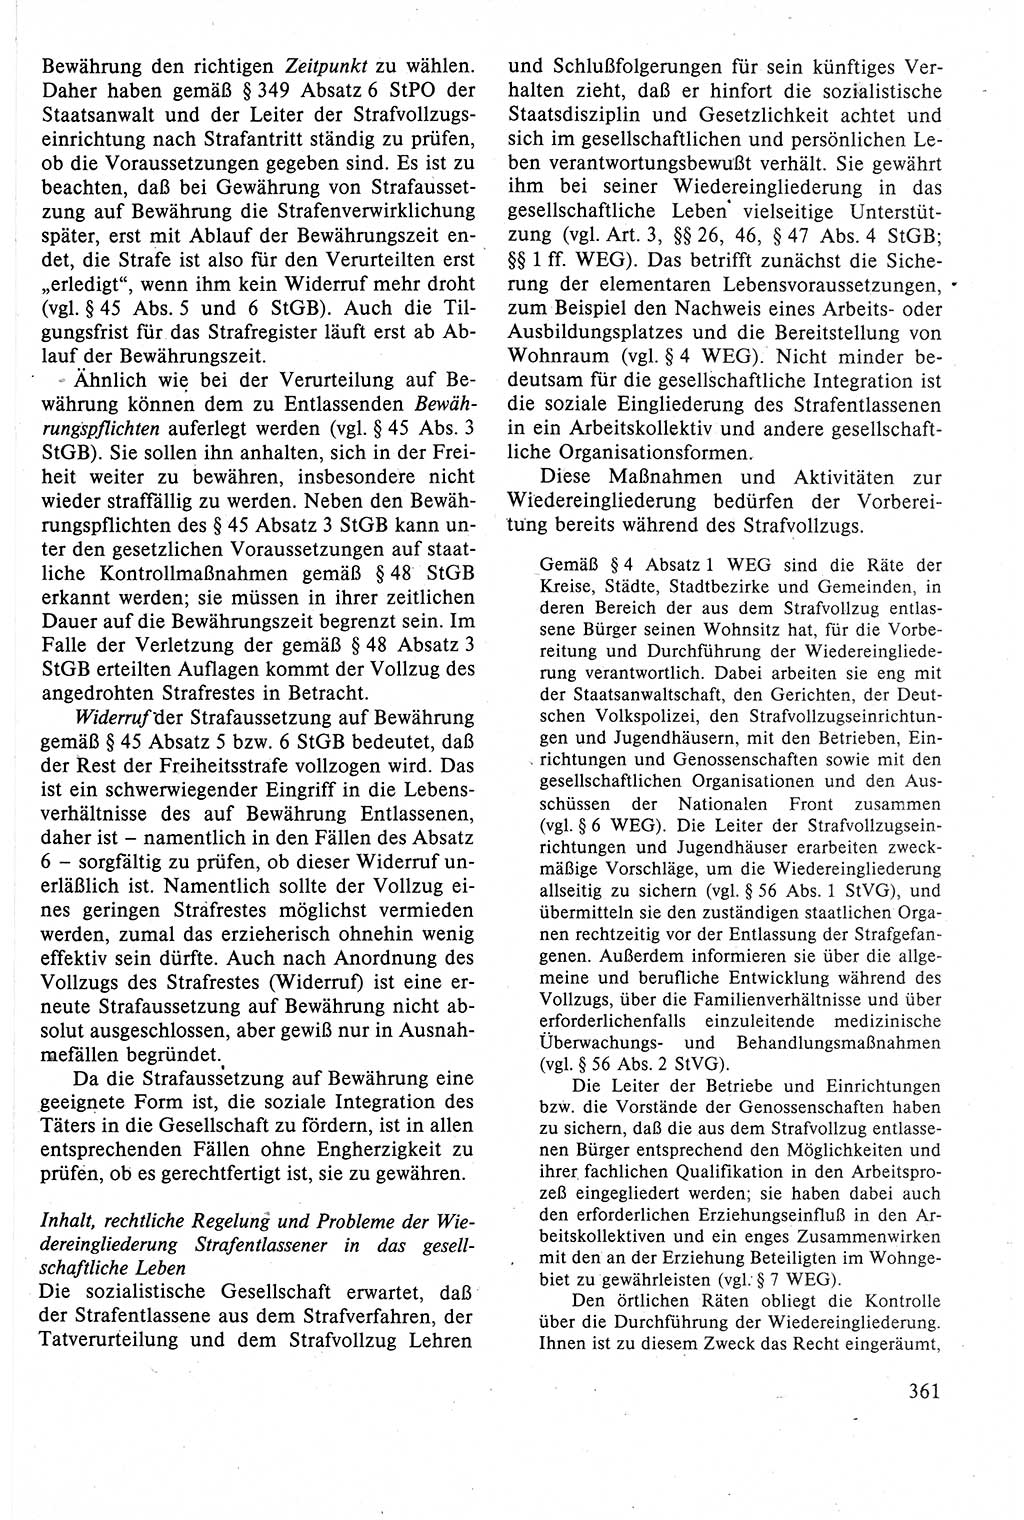 Strafrecht der DDR (Deutsche Demokratische Republik), Lehrbuch 1988, Seite 361 (Strafr. DDR Lb. 1988, S. 361)